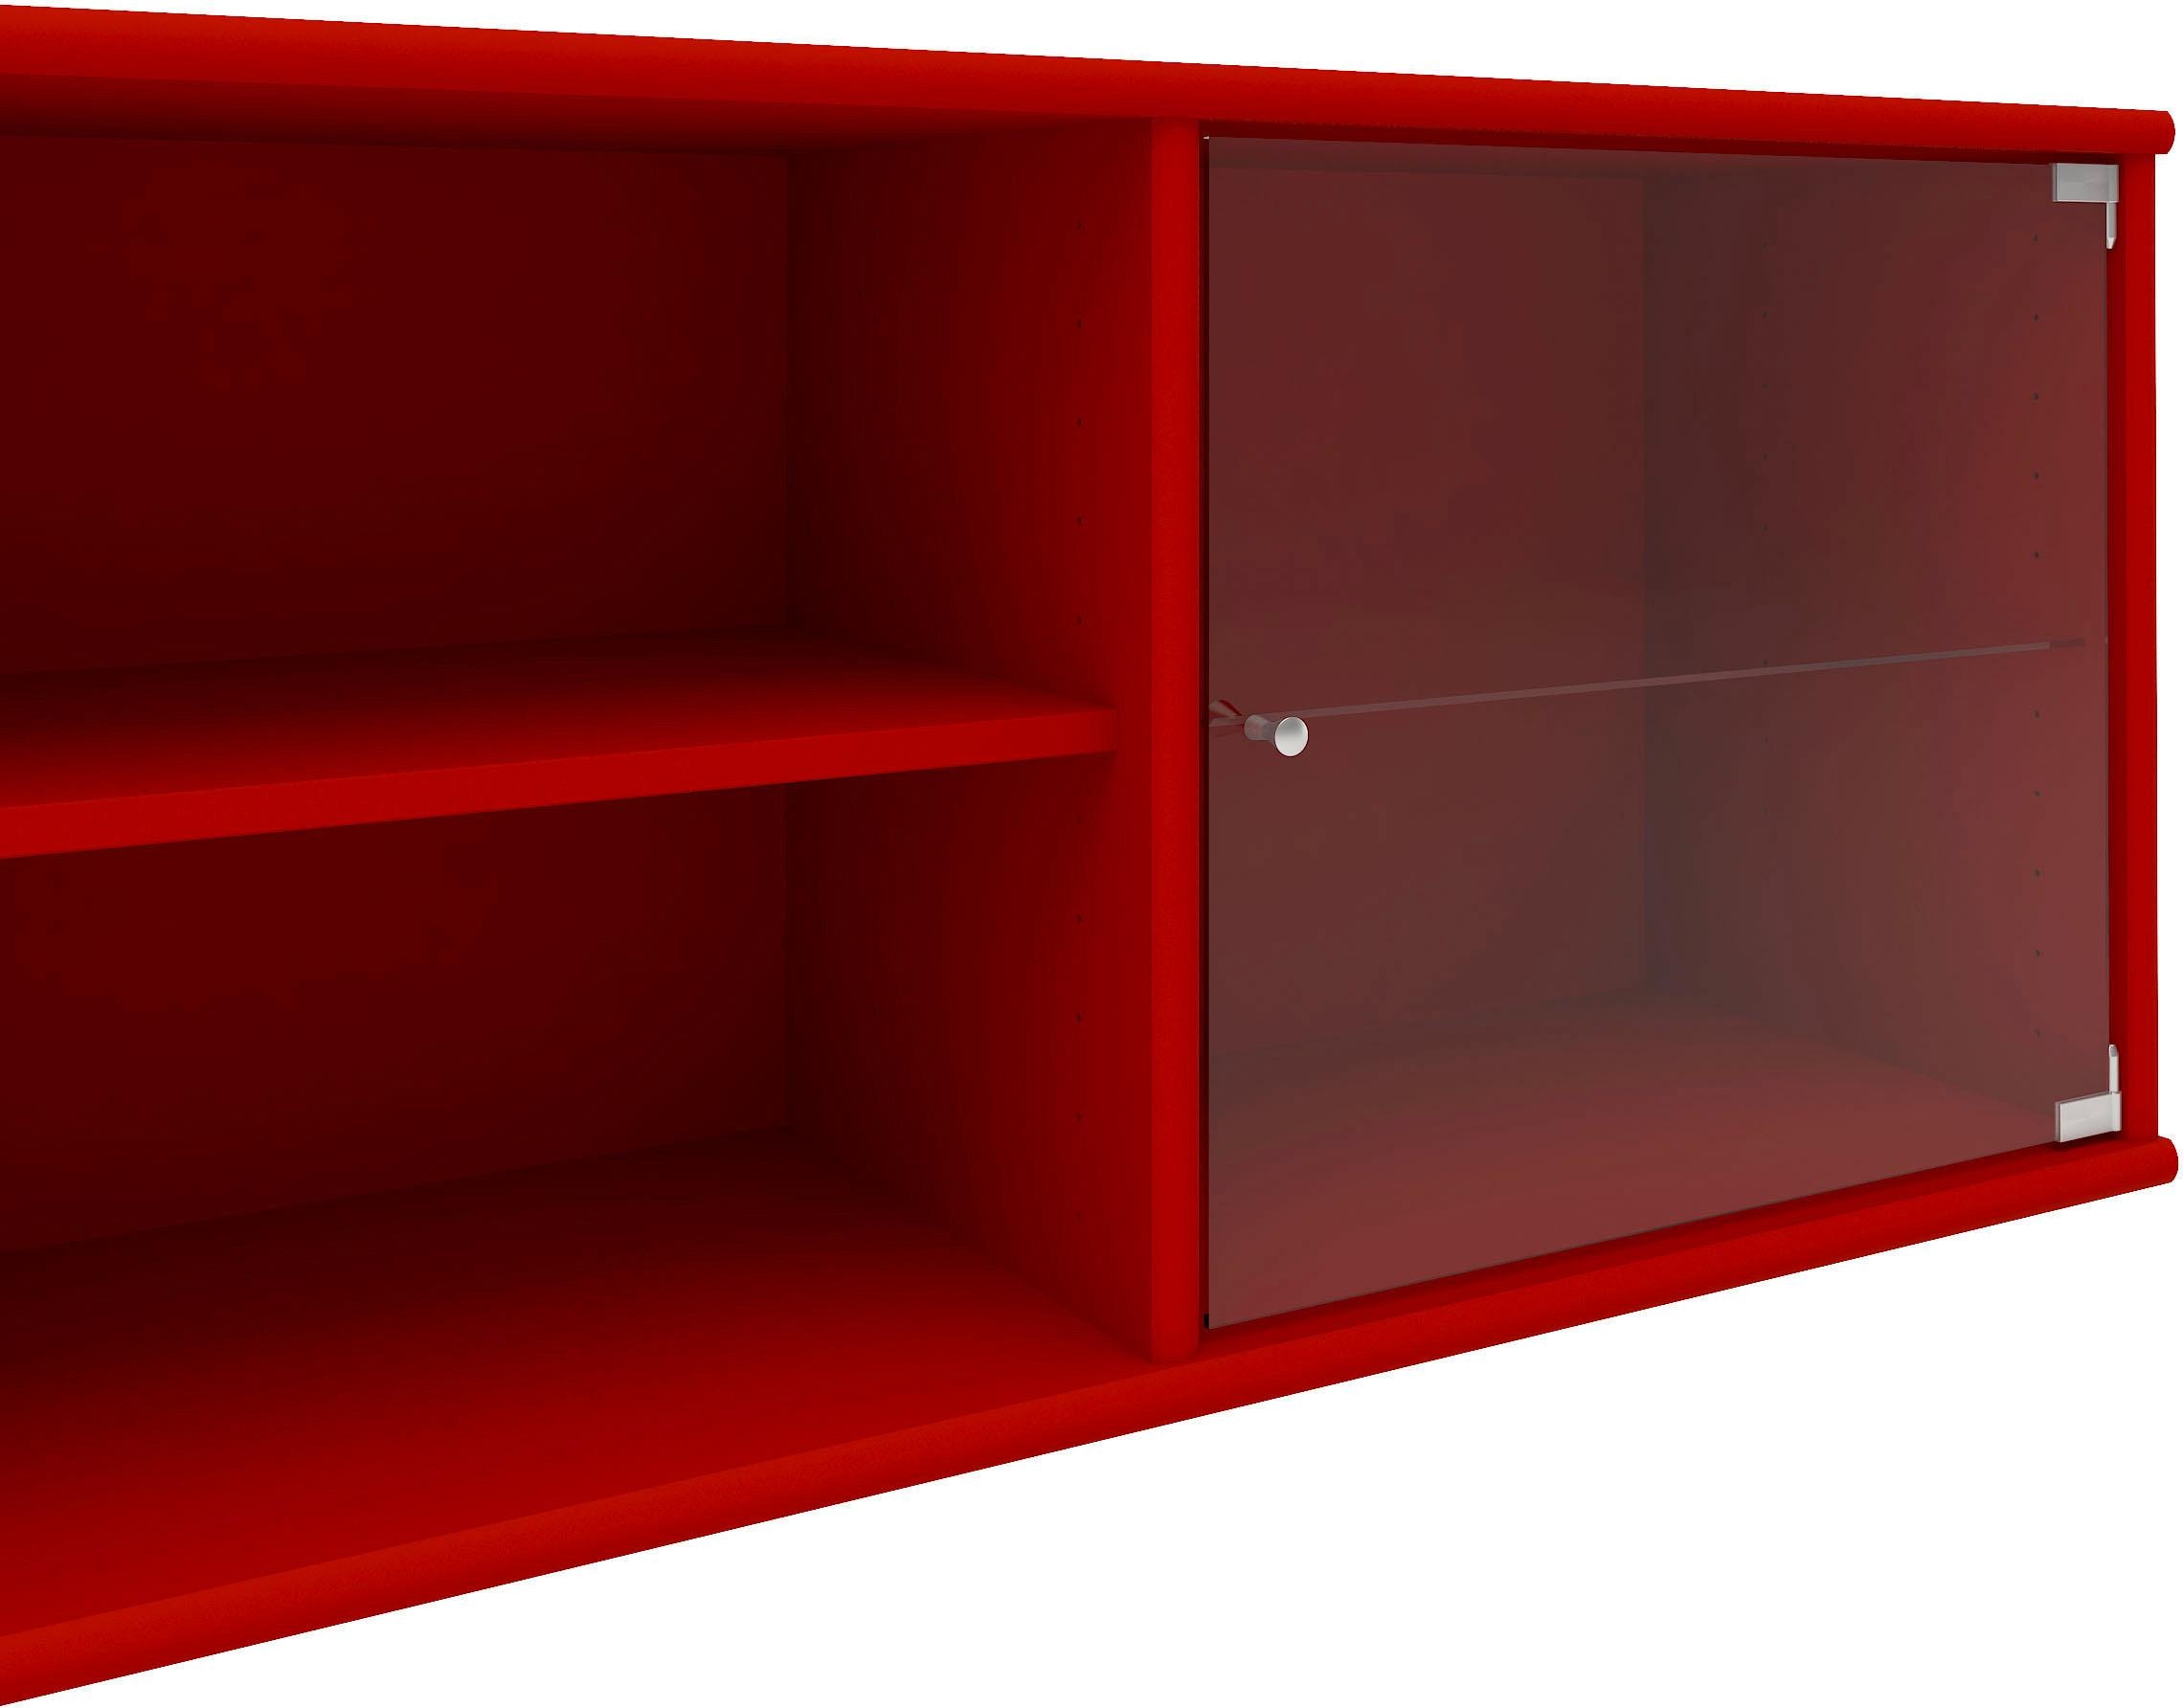 Hammel Furniture Regal »Mistral«, mit zwei Glastüren, B: 177 cm, lowboard, anpassungsbar  Designmöbel auf Rechnung kaufen